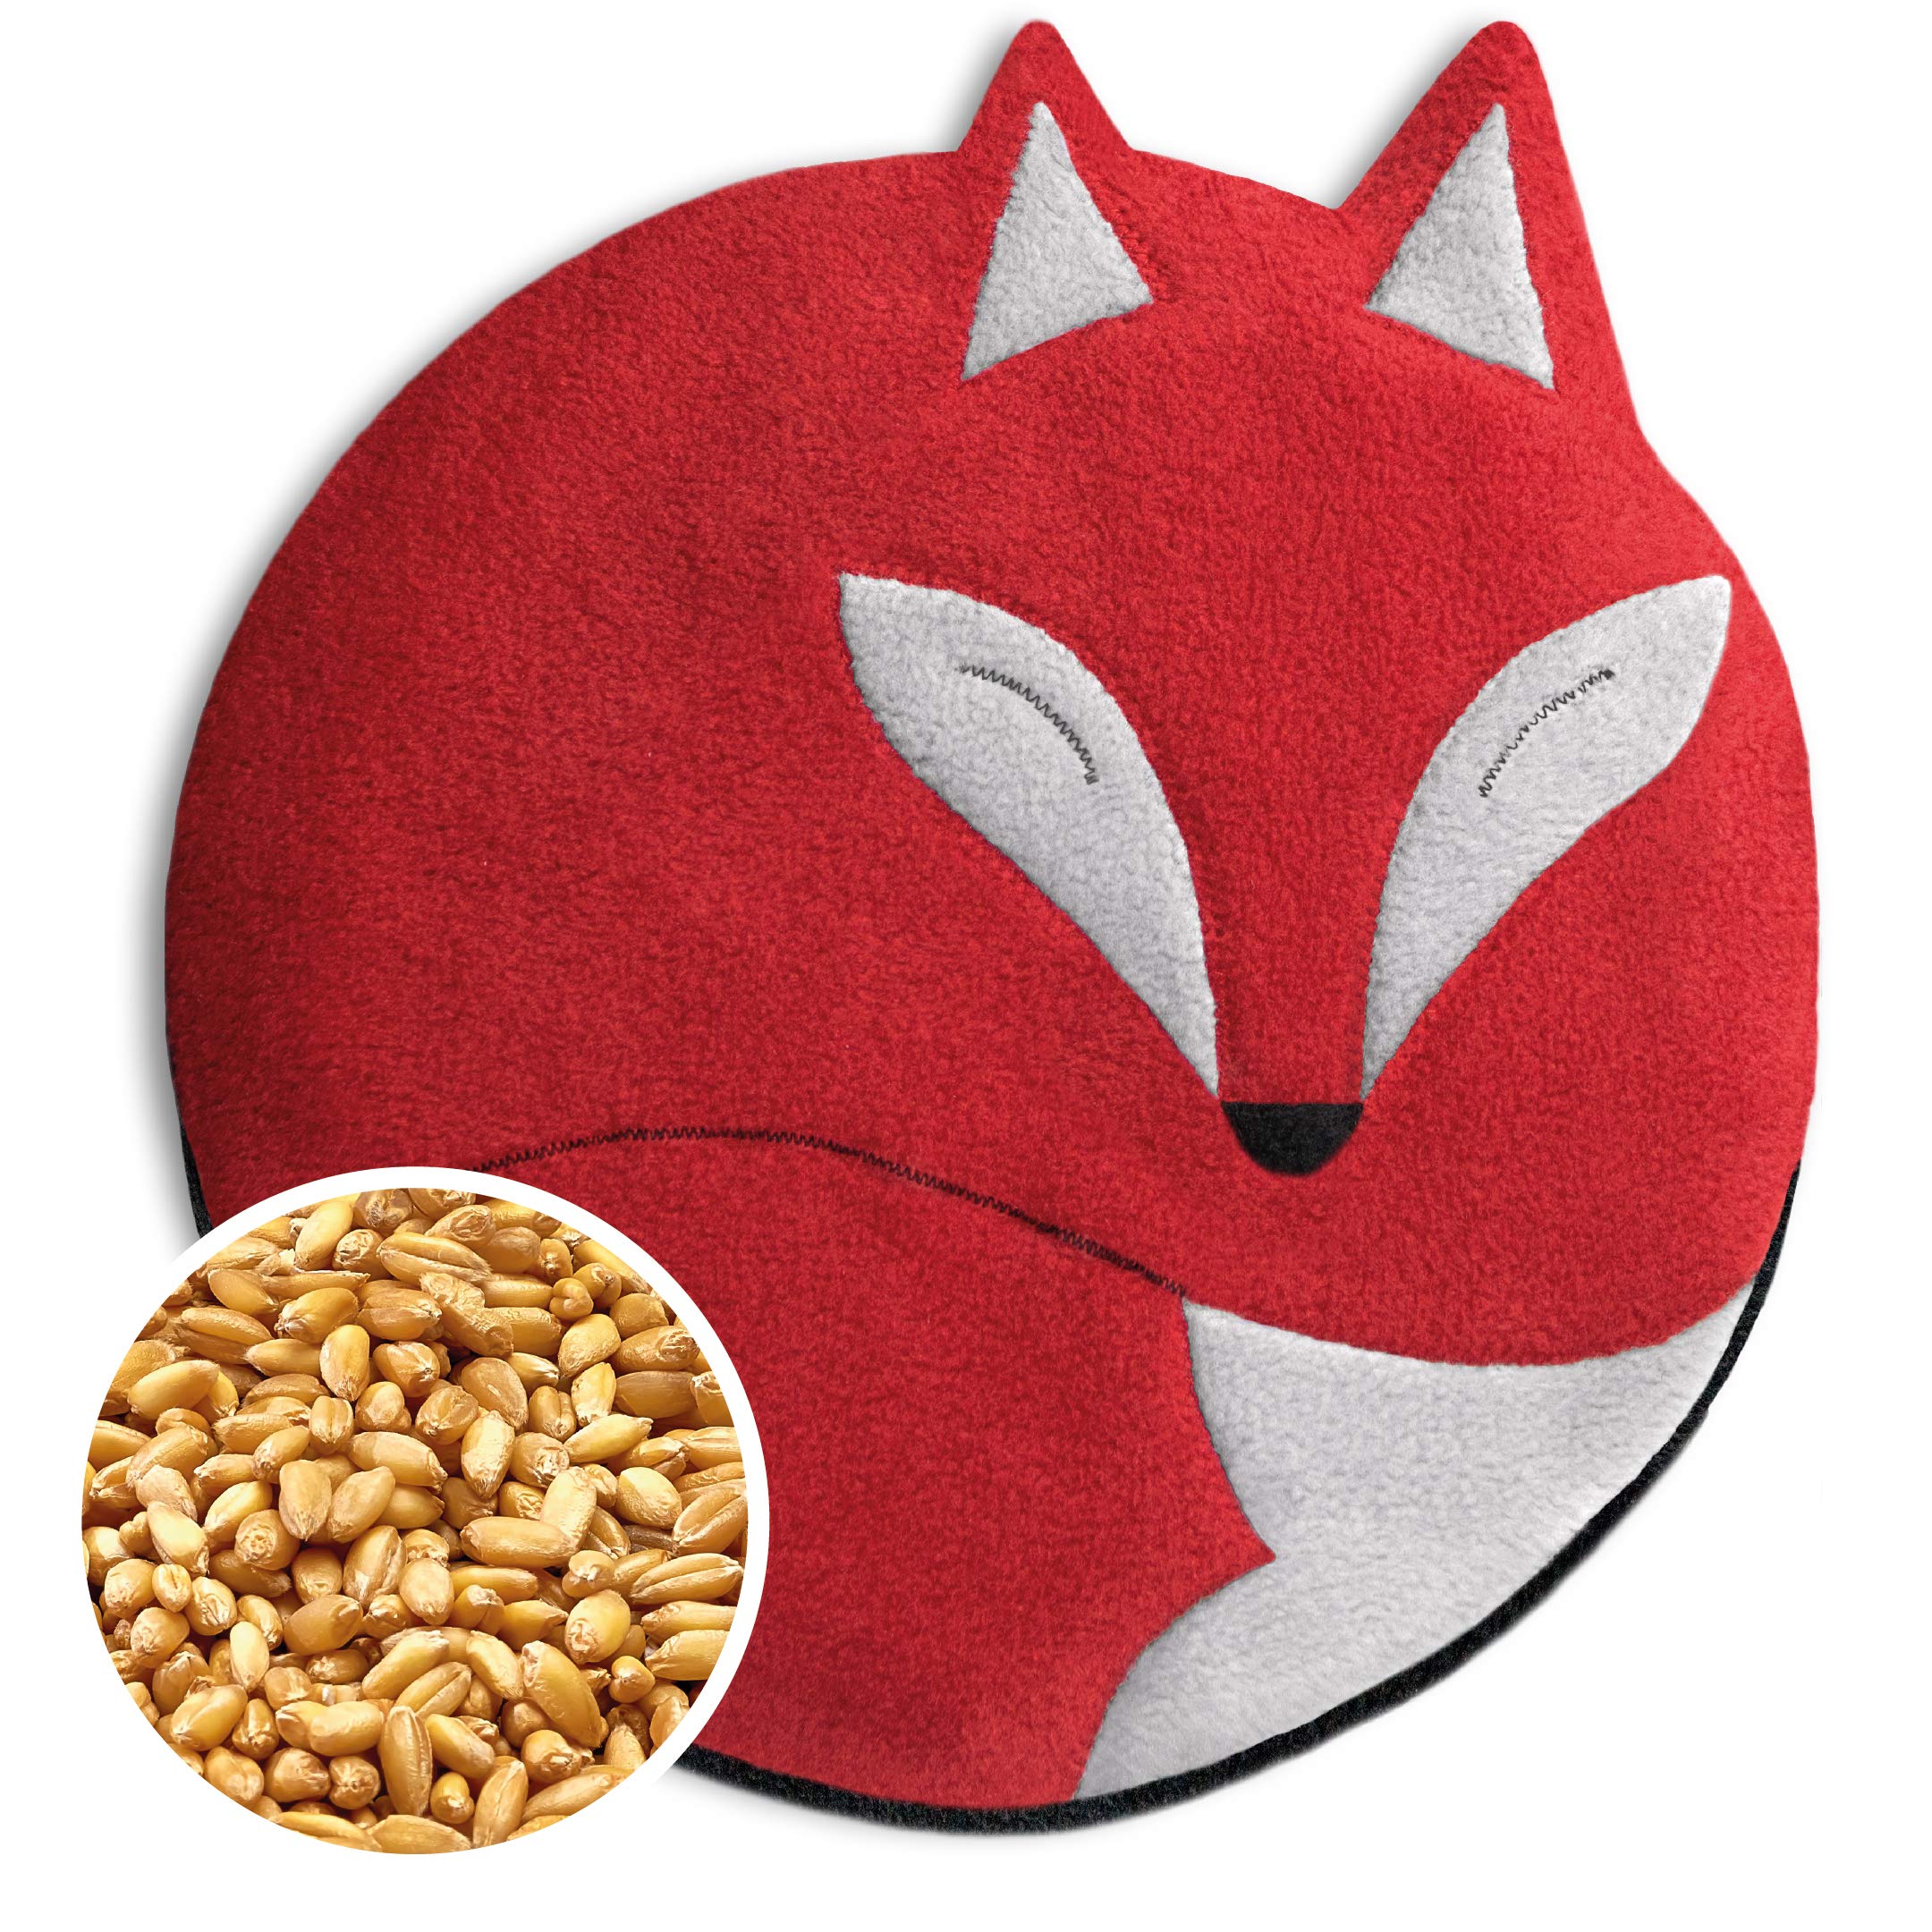 LESCHI Wärmekissen - 4 Kammer Körnerkissen für Mikrowelle - Tier Fuchs Rot - anschmiegsames Getreidekissen mit Bio Weizen - ideal als Wärmespender im Winter und für den Bauch